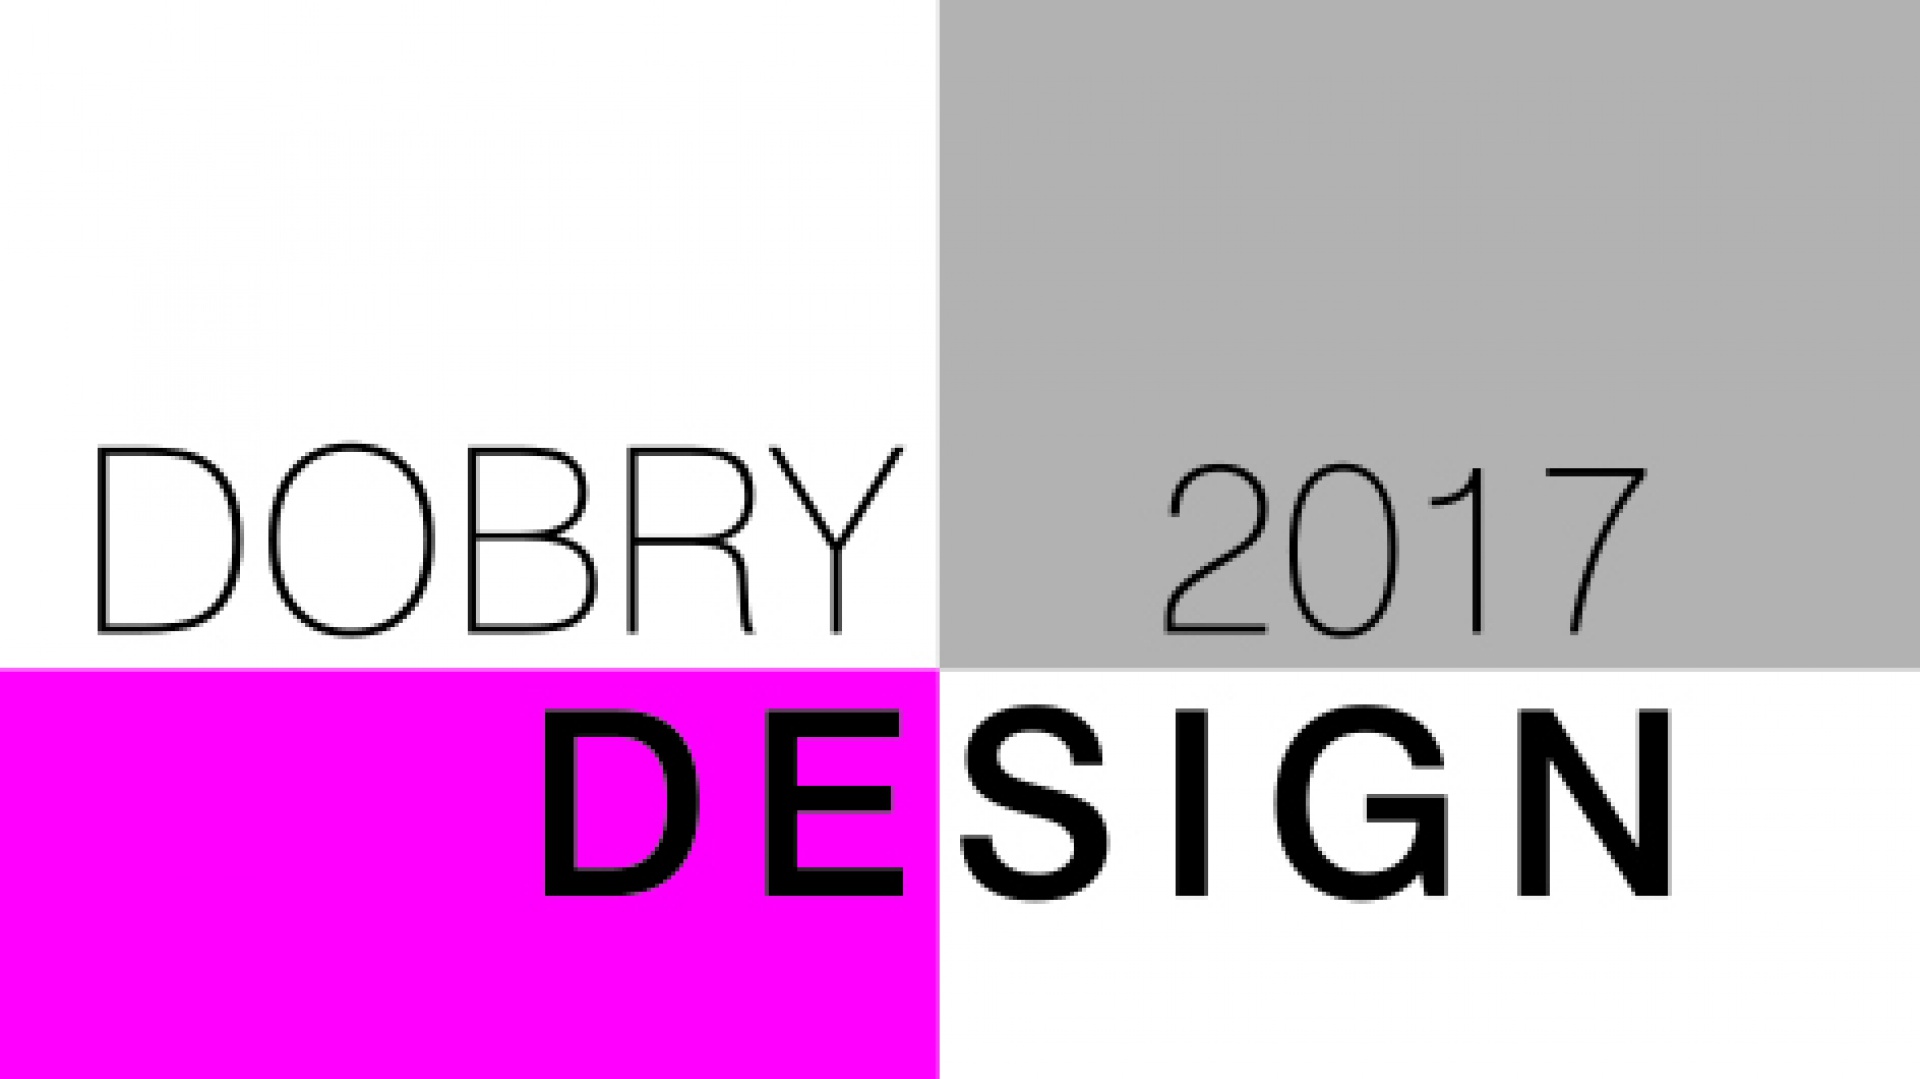 Konkurs Dobry Design 2017. Kim są jurorzy?